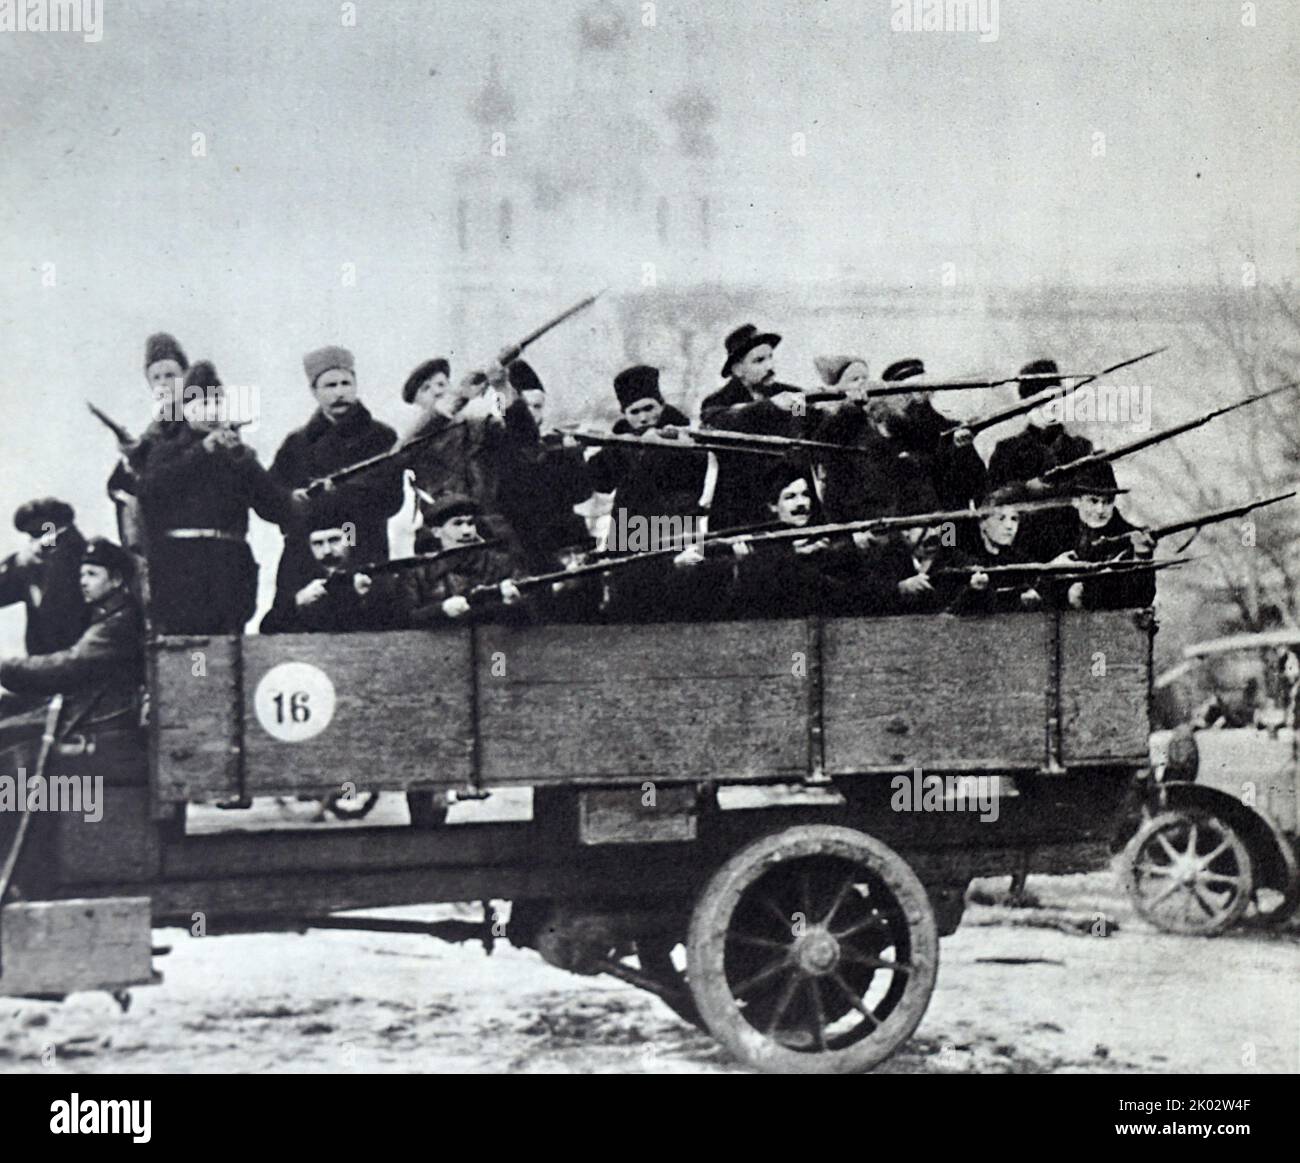 Un distacco delle Guardie rosse a Smolny prima di essere inviato in una missione di combattimento del Comitato militare rivoluzionario. Pietrogrado, 25 ottobre 1917. Foto di P. Otsup. Foto Stock